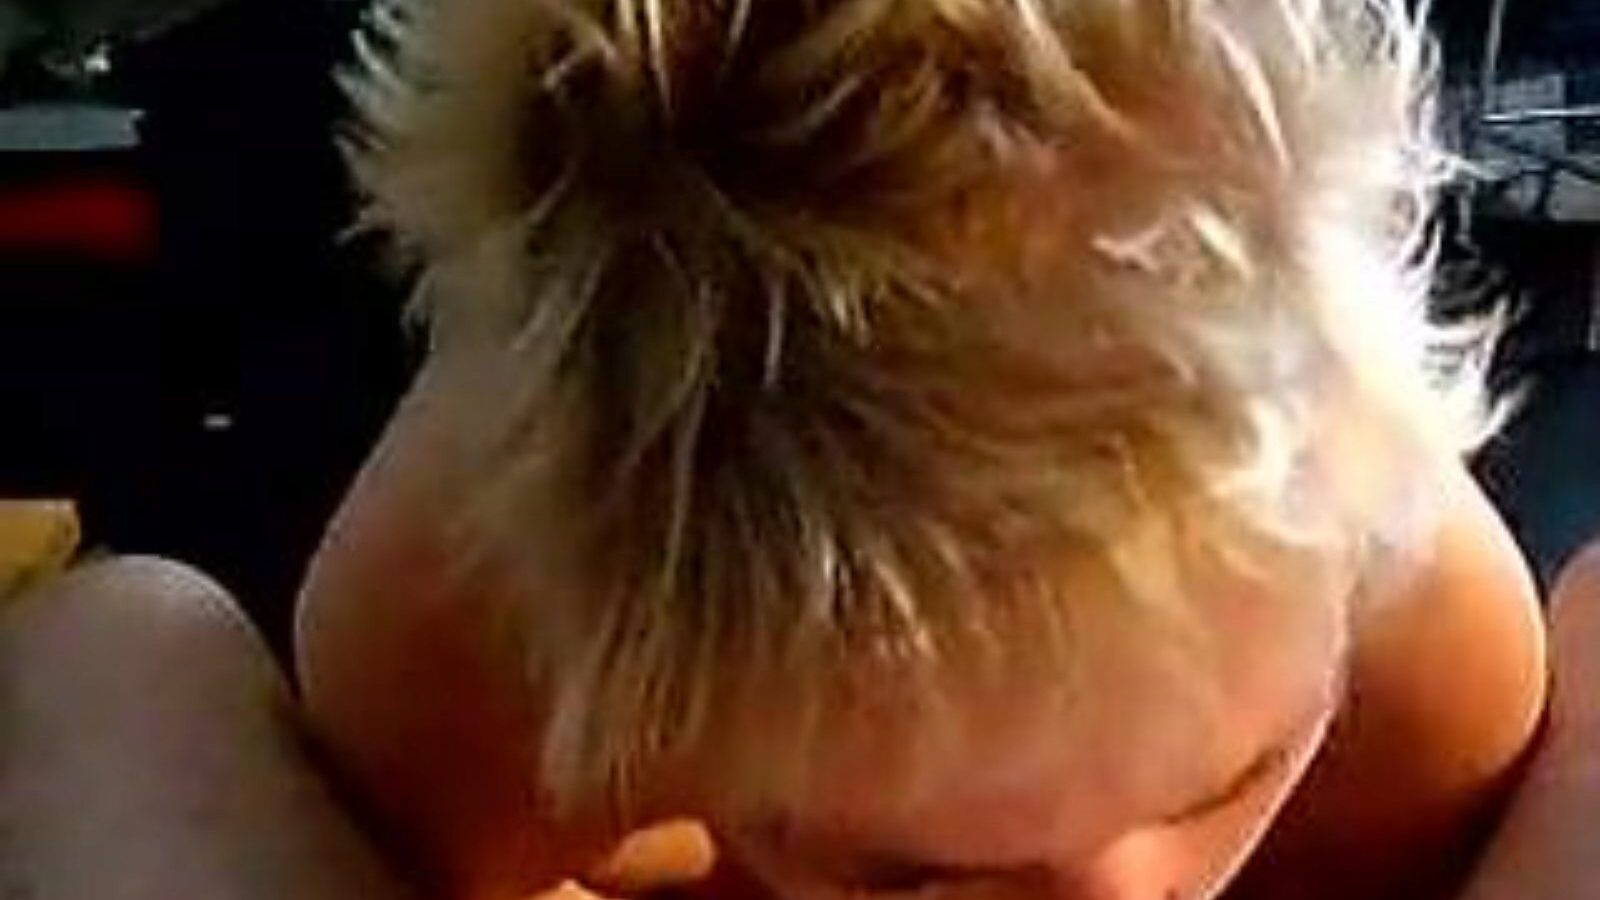 leuke dame: hjemmelavet & gammel pige porno video a6 - xhamster se leuke dame tube fuckfest film gratis på xhamster, med den hotteste samling af hollandsk hjemmelavet, gammel pige og sugende pornografiklip